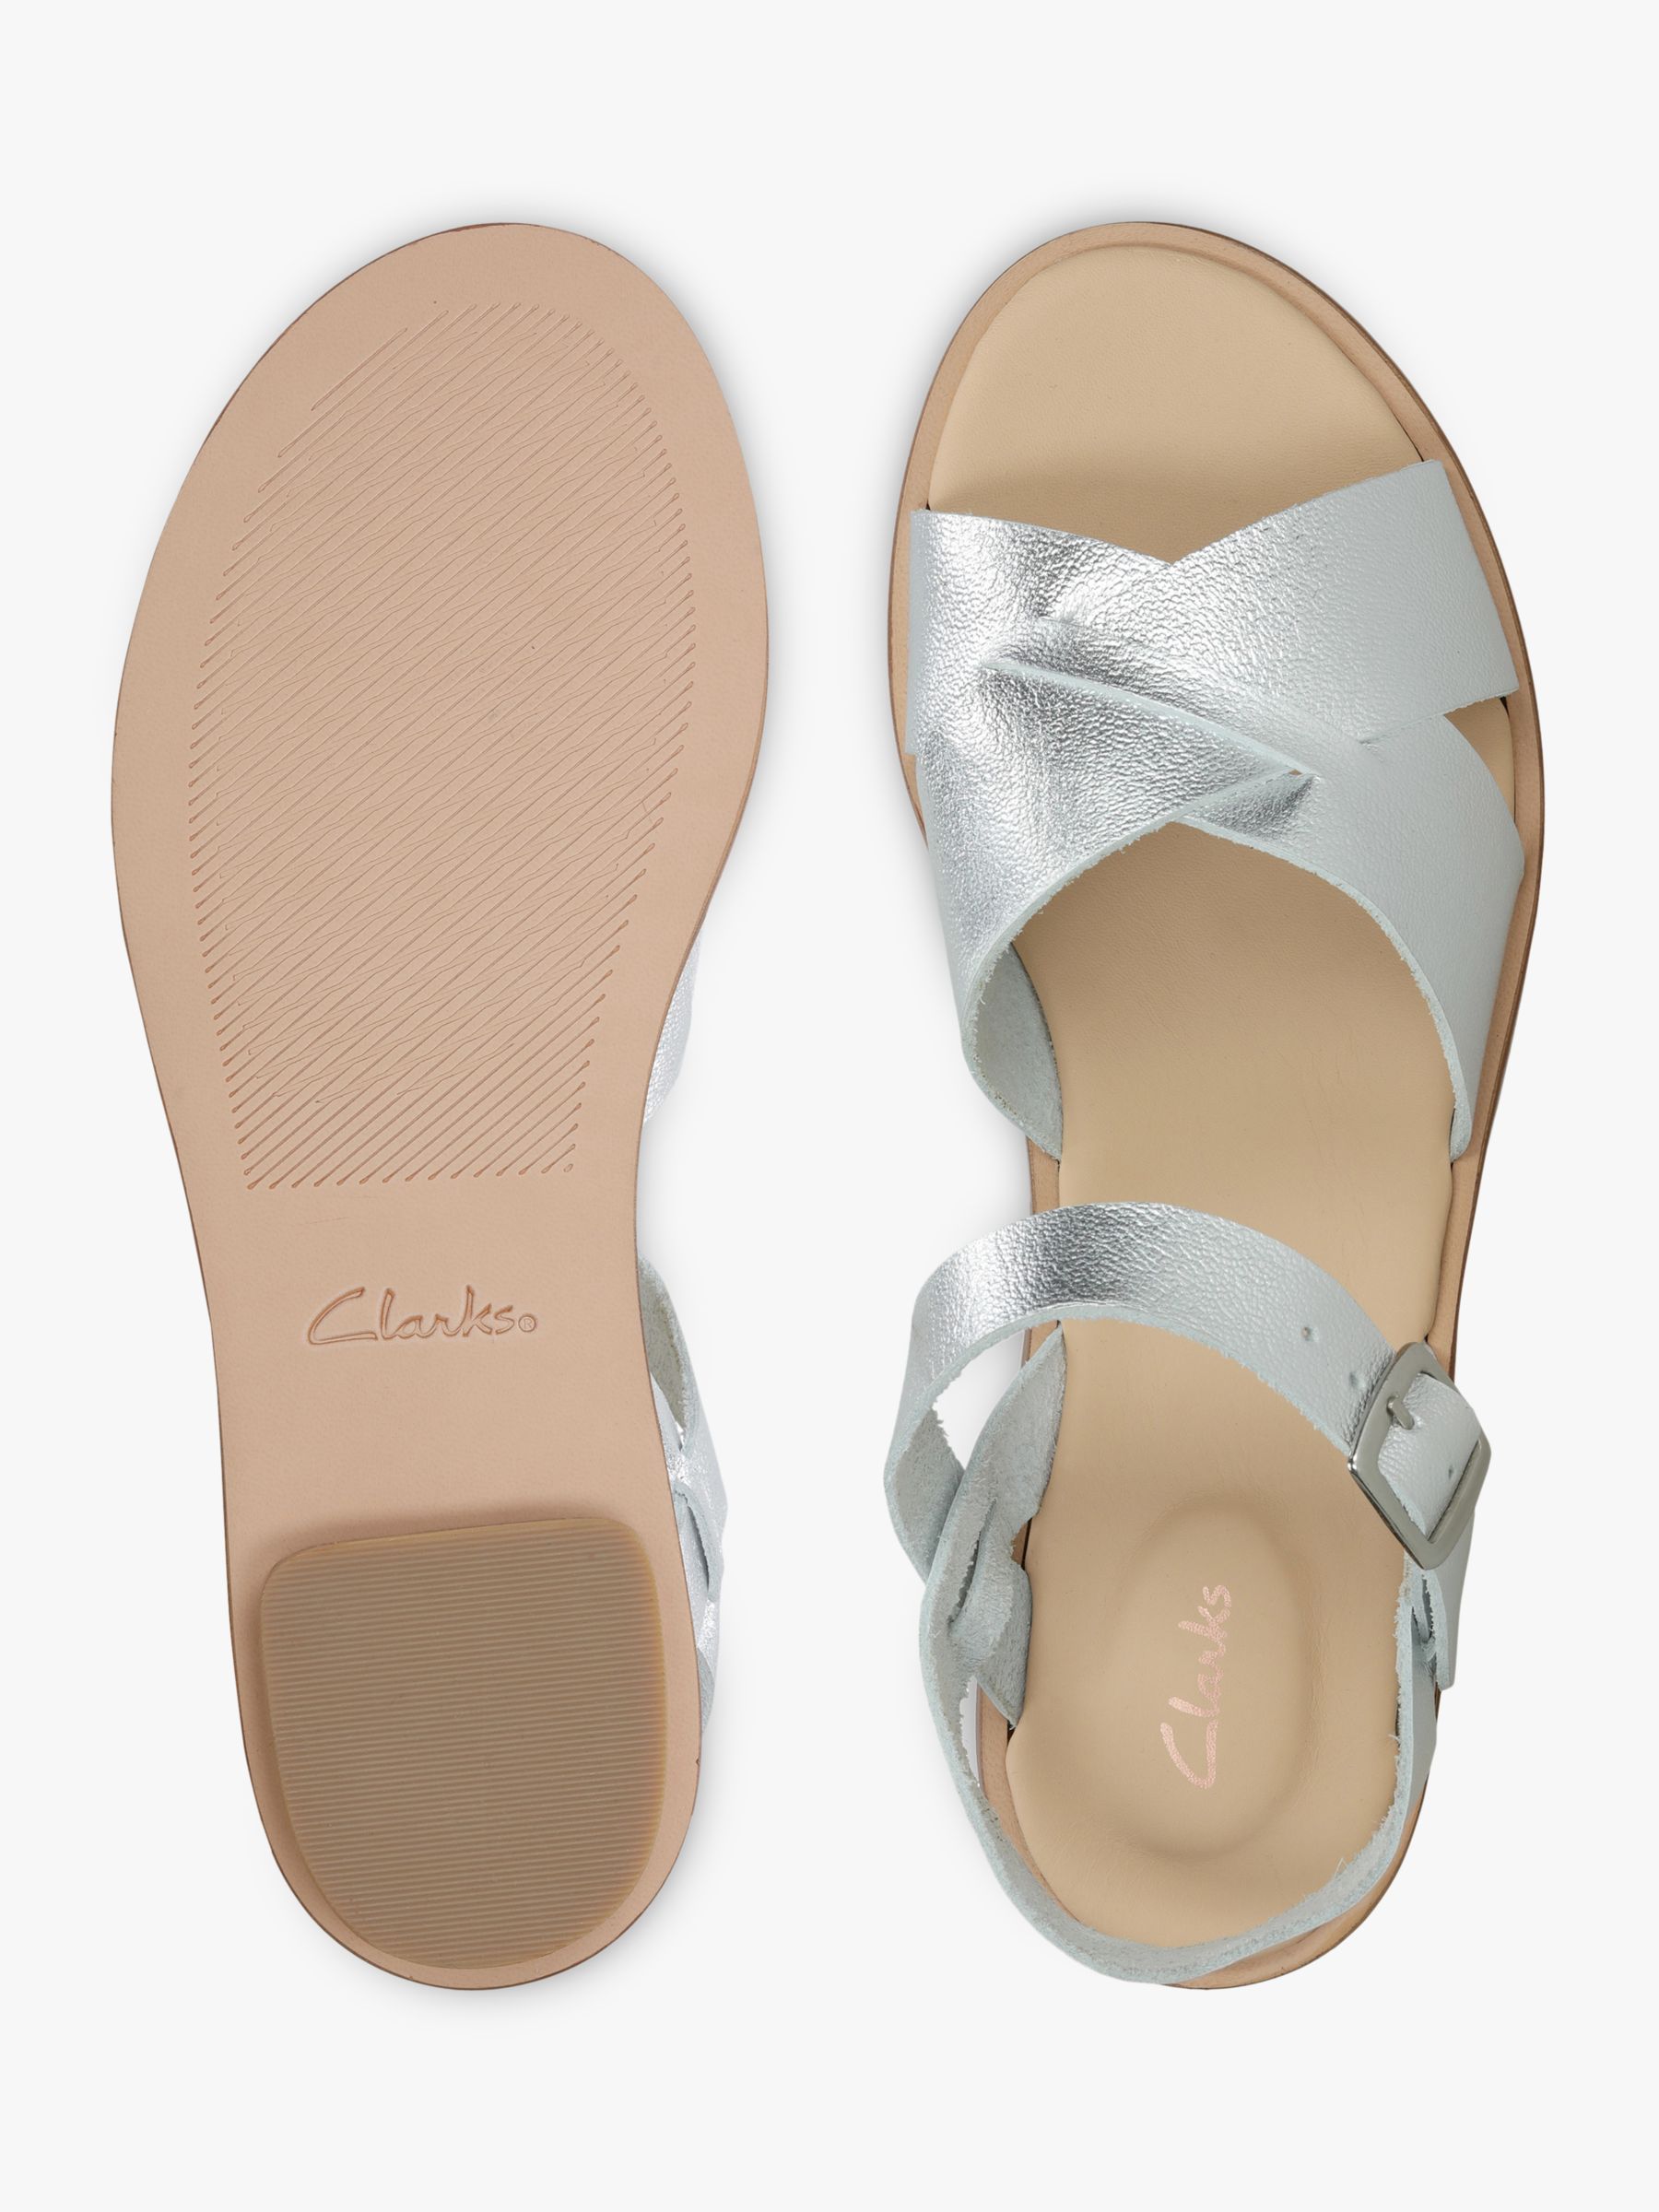 clarks women's spa leather flip flop